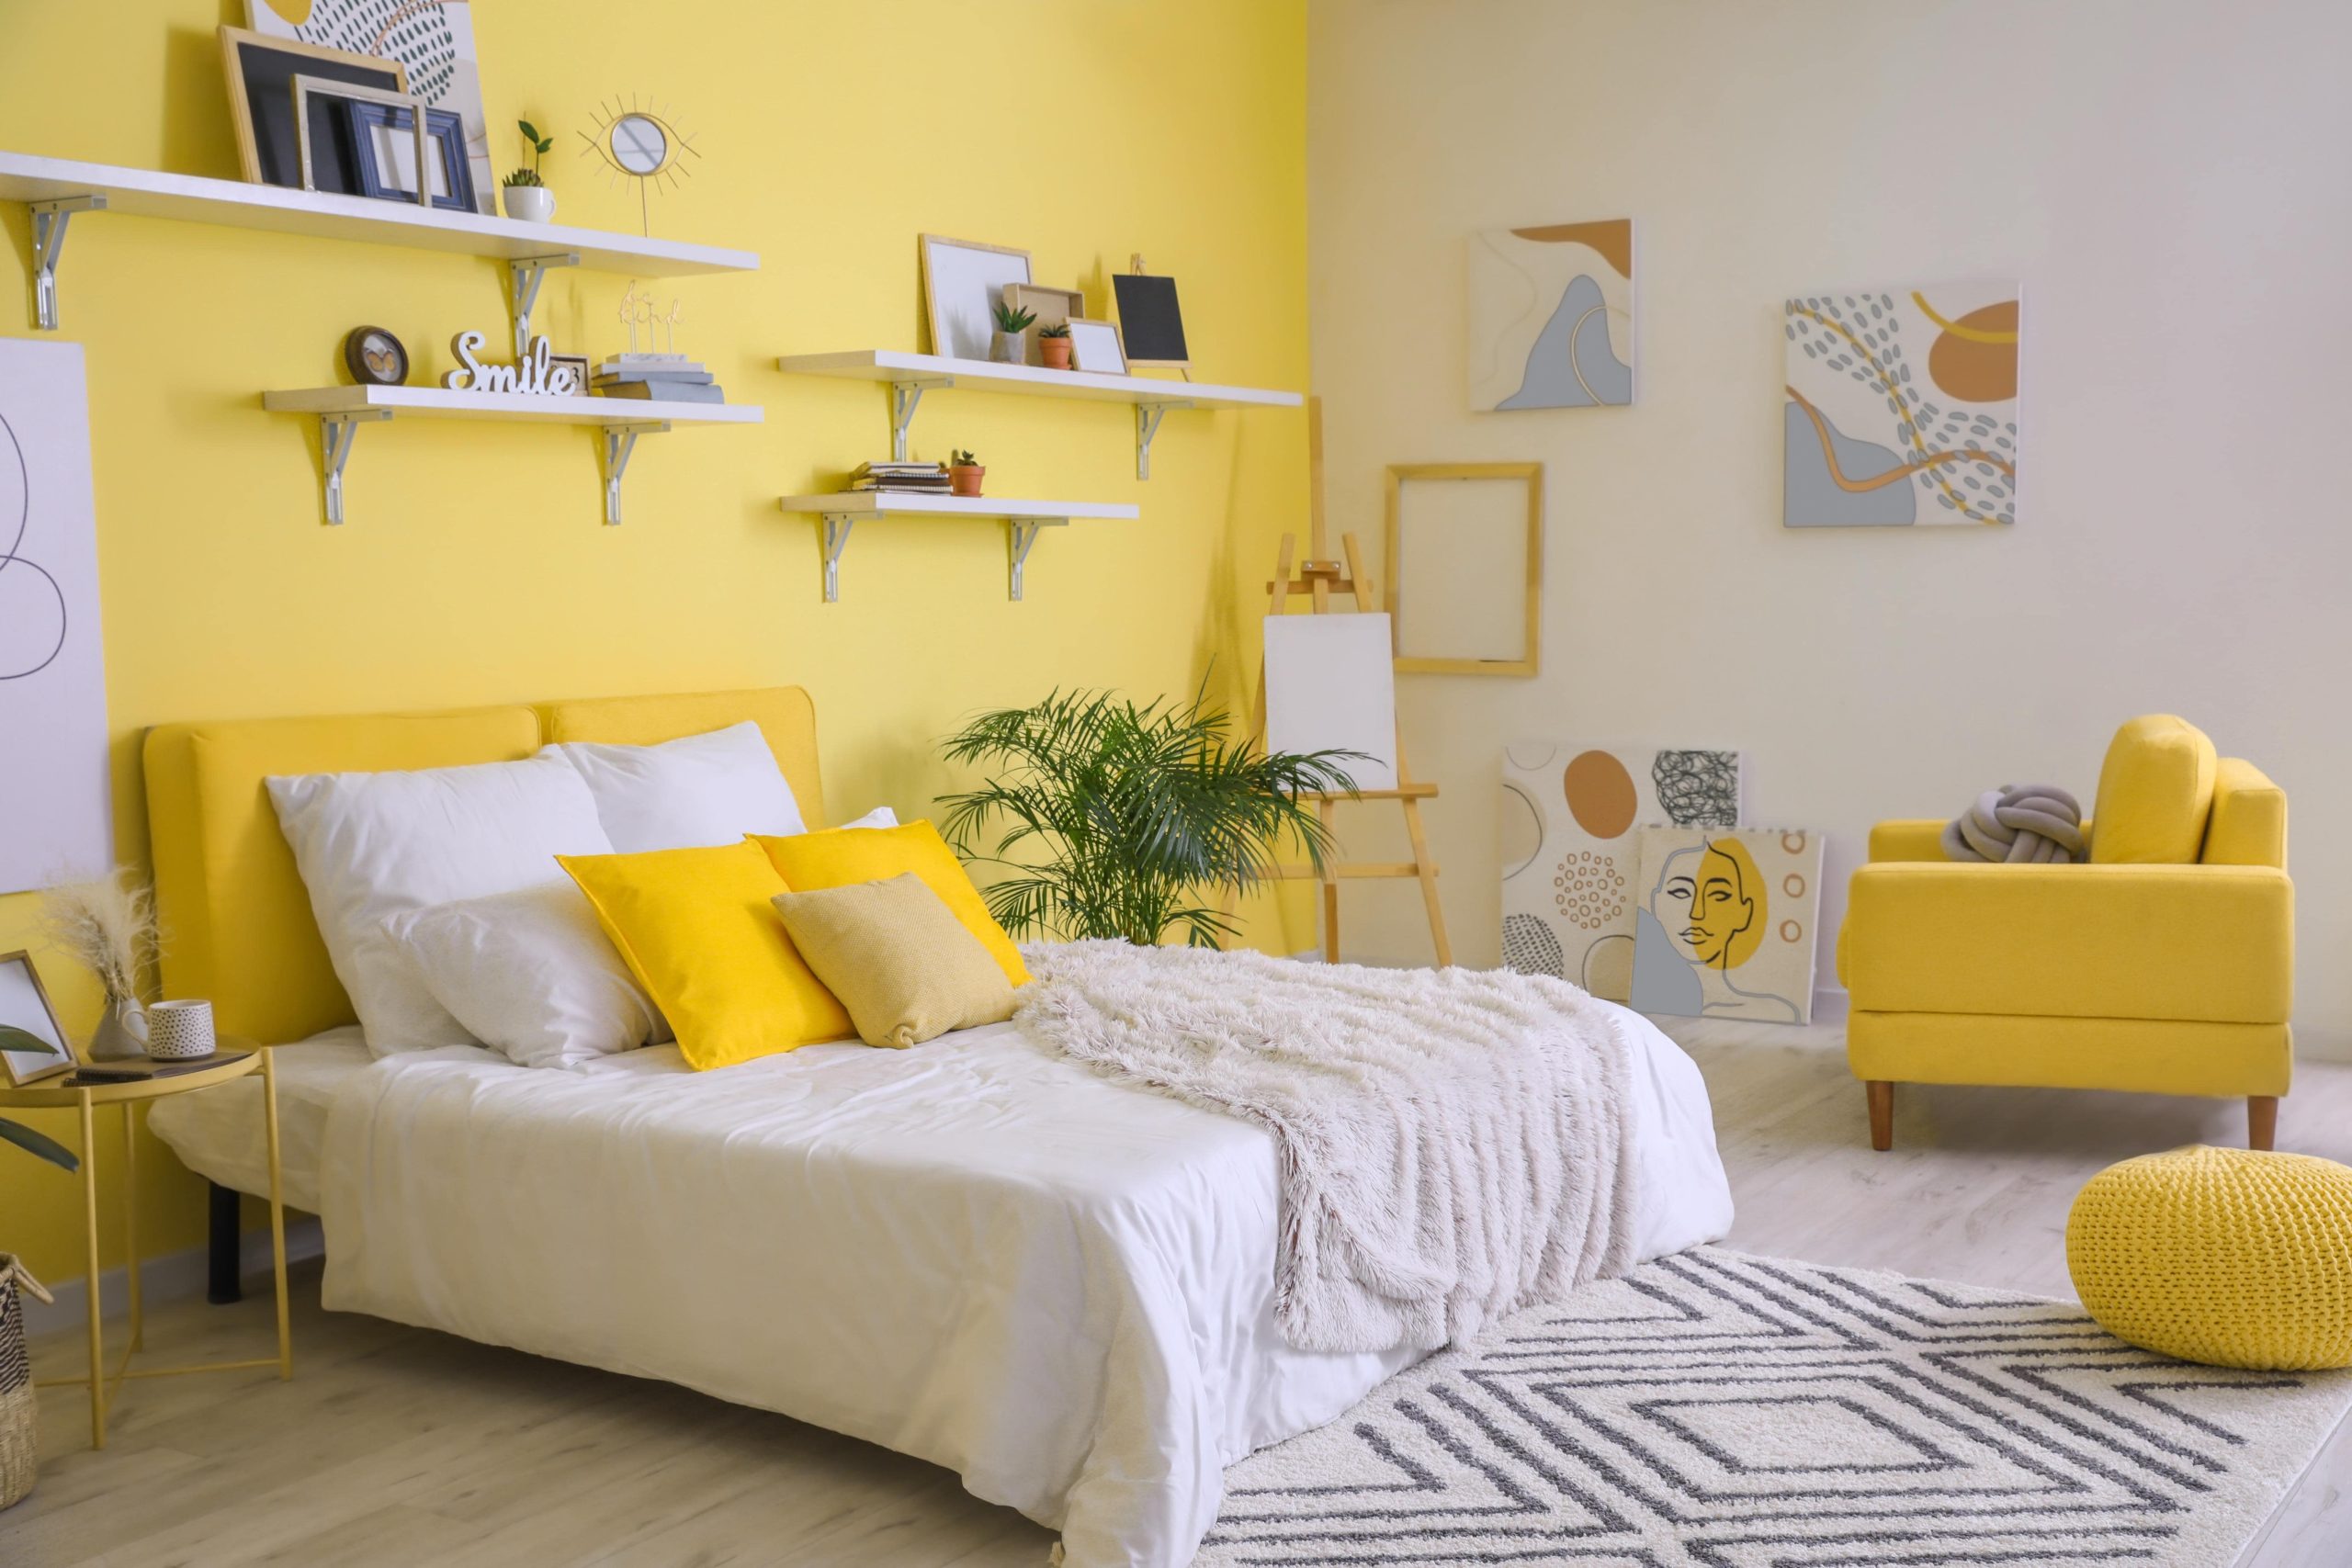 décoration chambre jaune